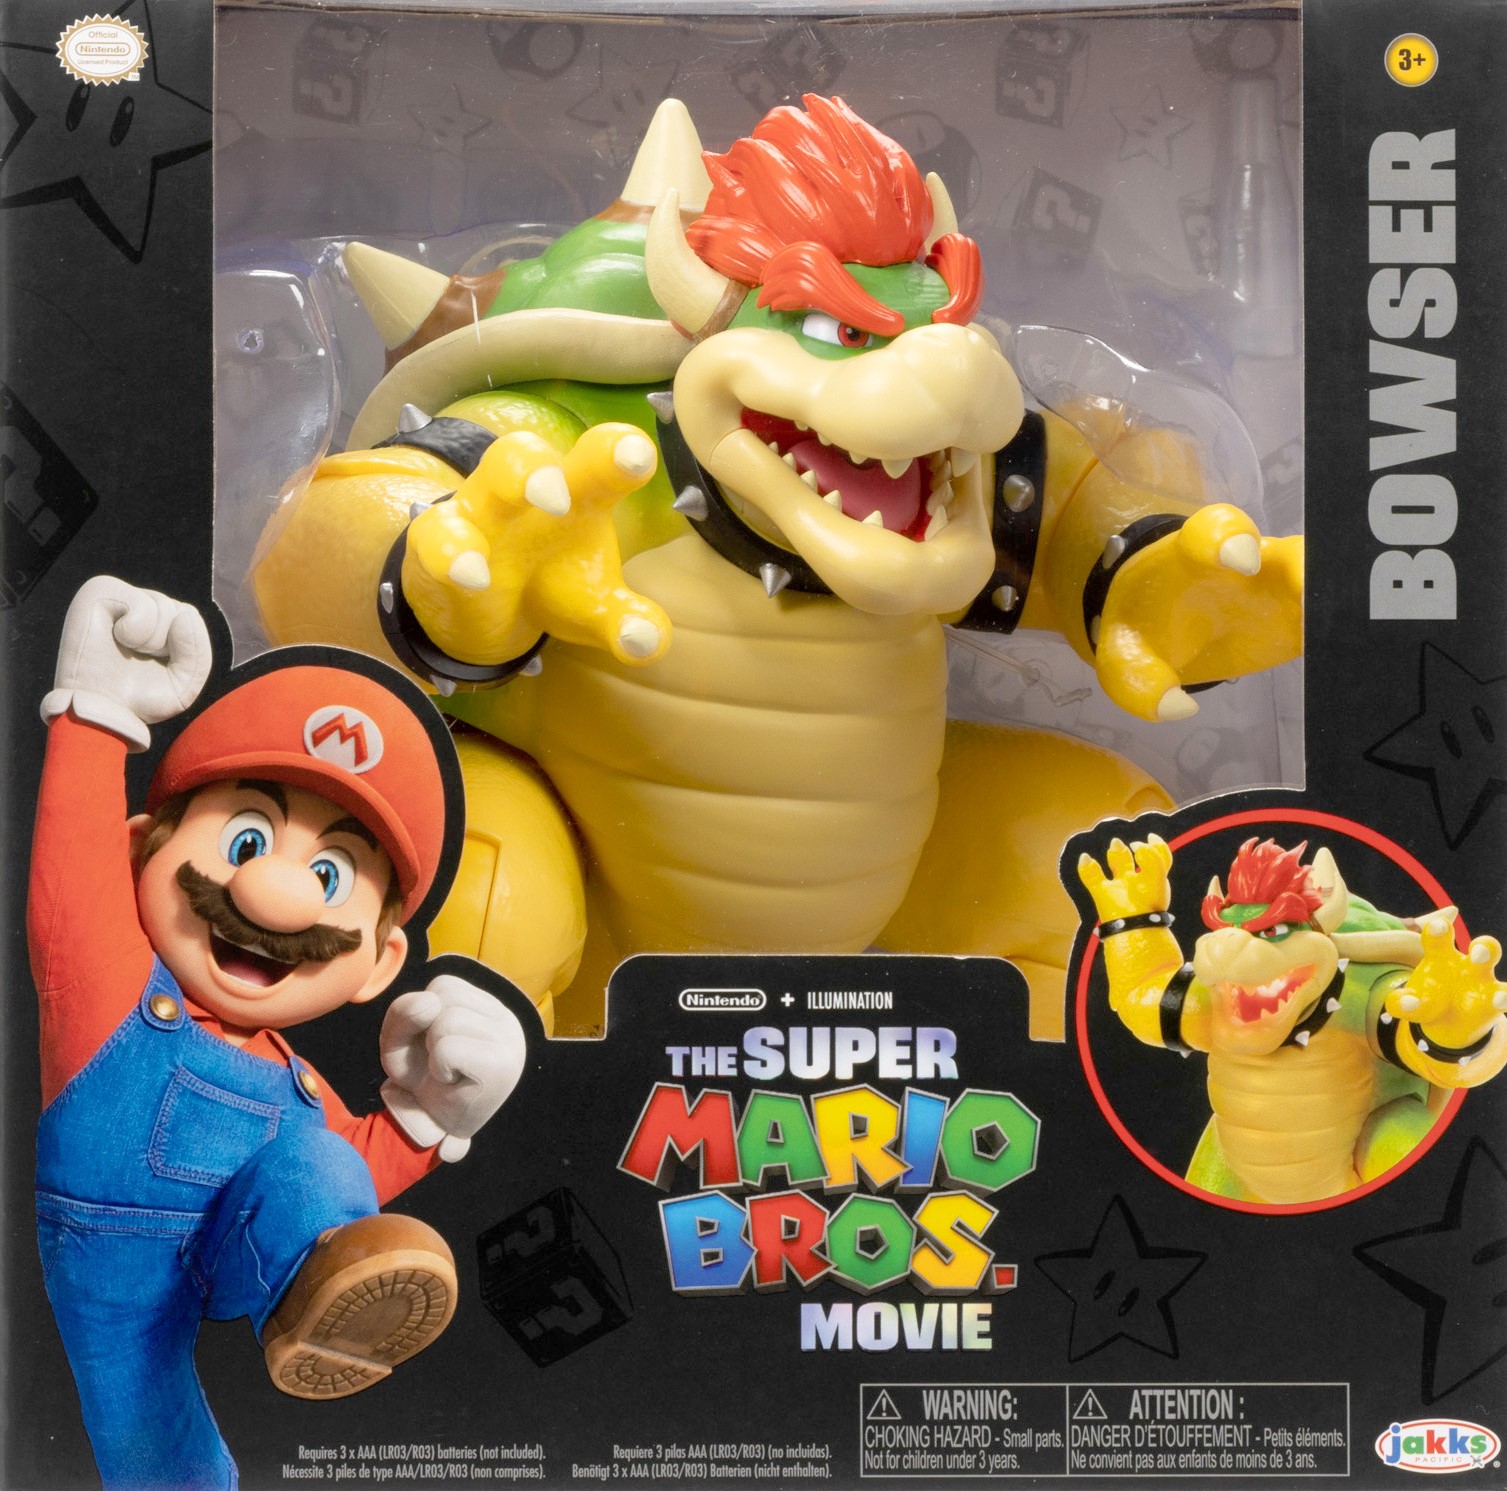 Mario bowser toys